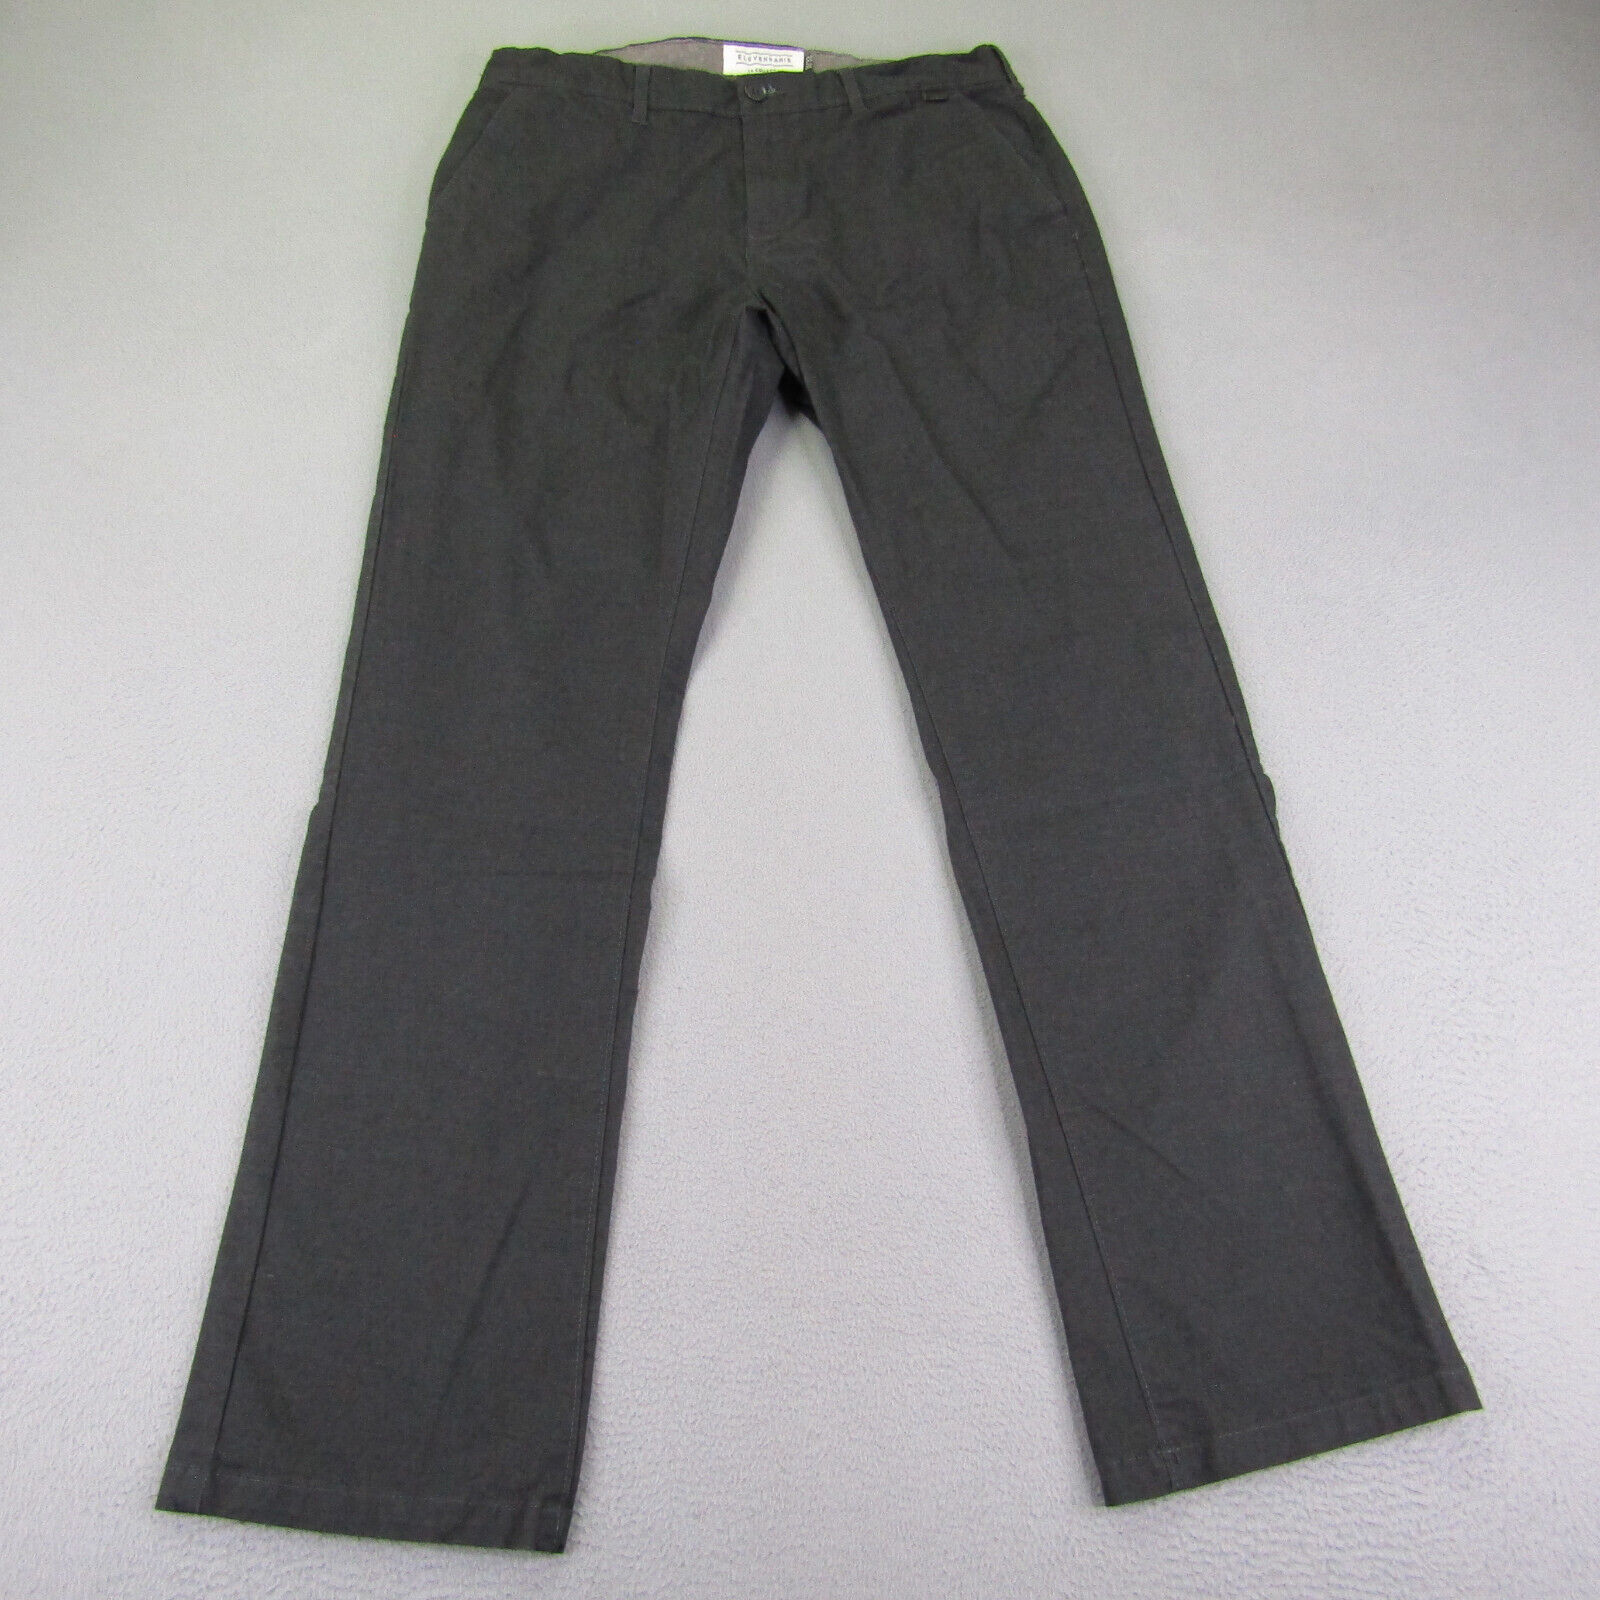 Eleven Paris Pants Mens 31x32 Gray Chino LA Collection Casual Cotton Blend Flex